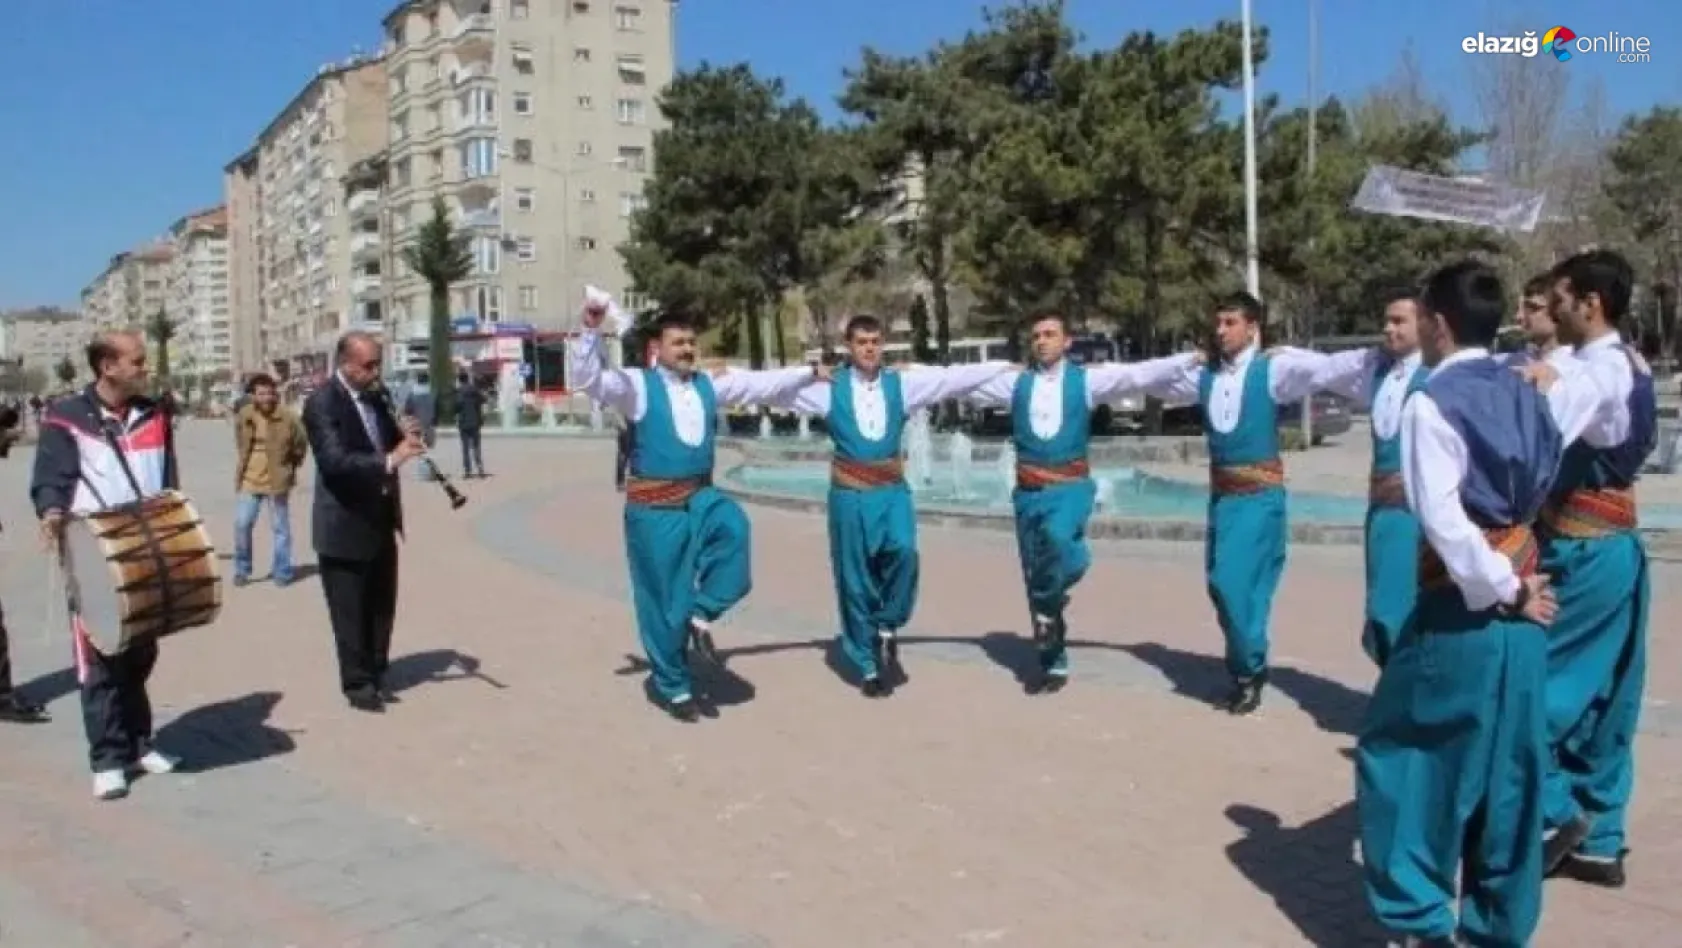 Elazığ'da gerçekleşen yerel etkinlikler şehre renk katıyor